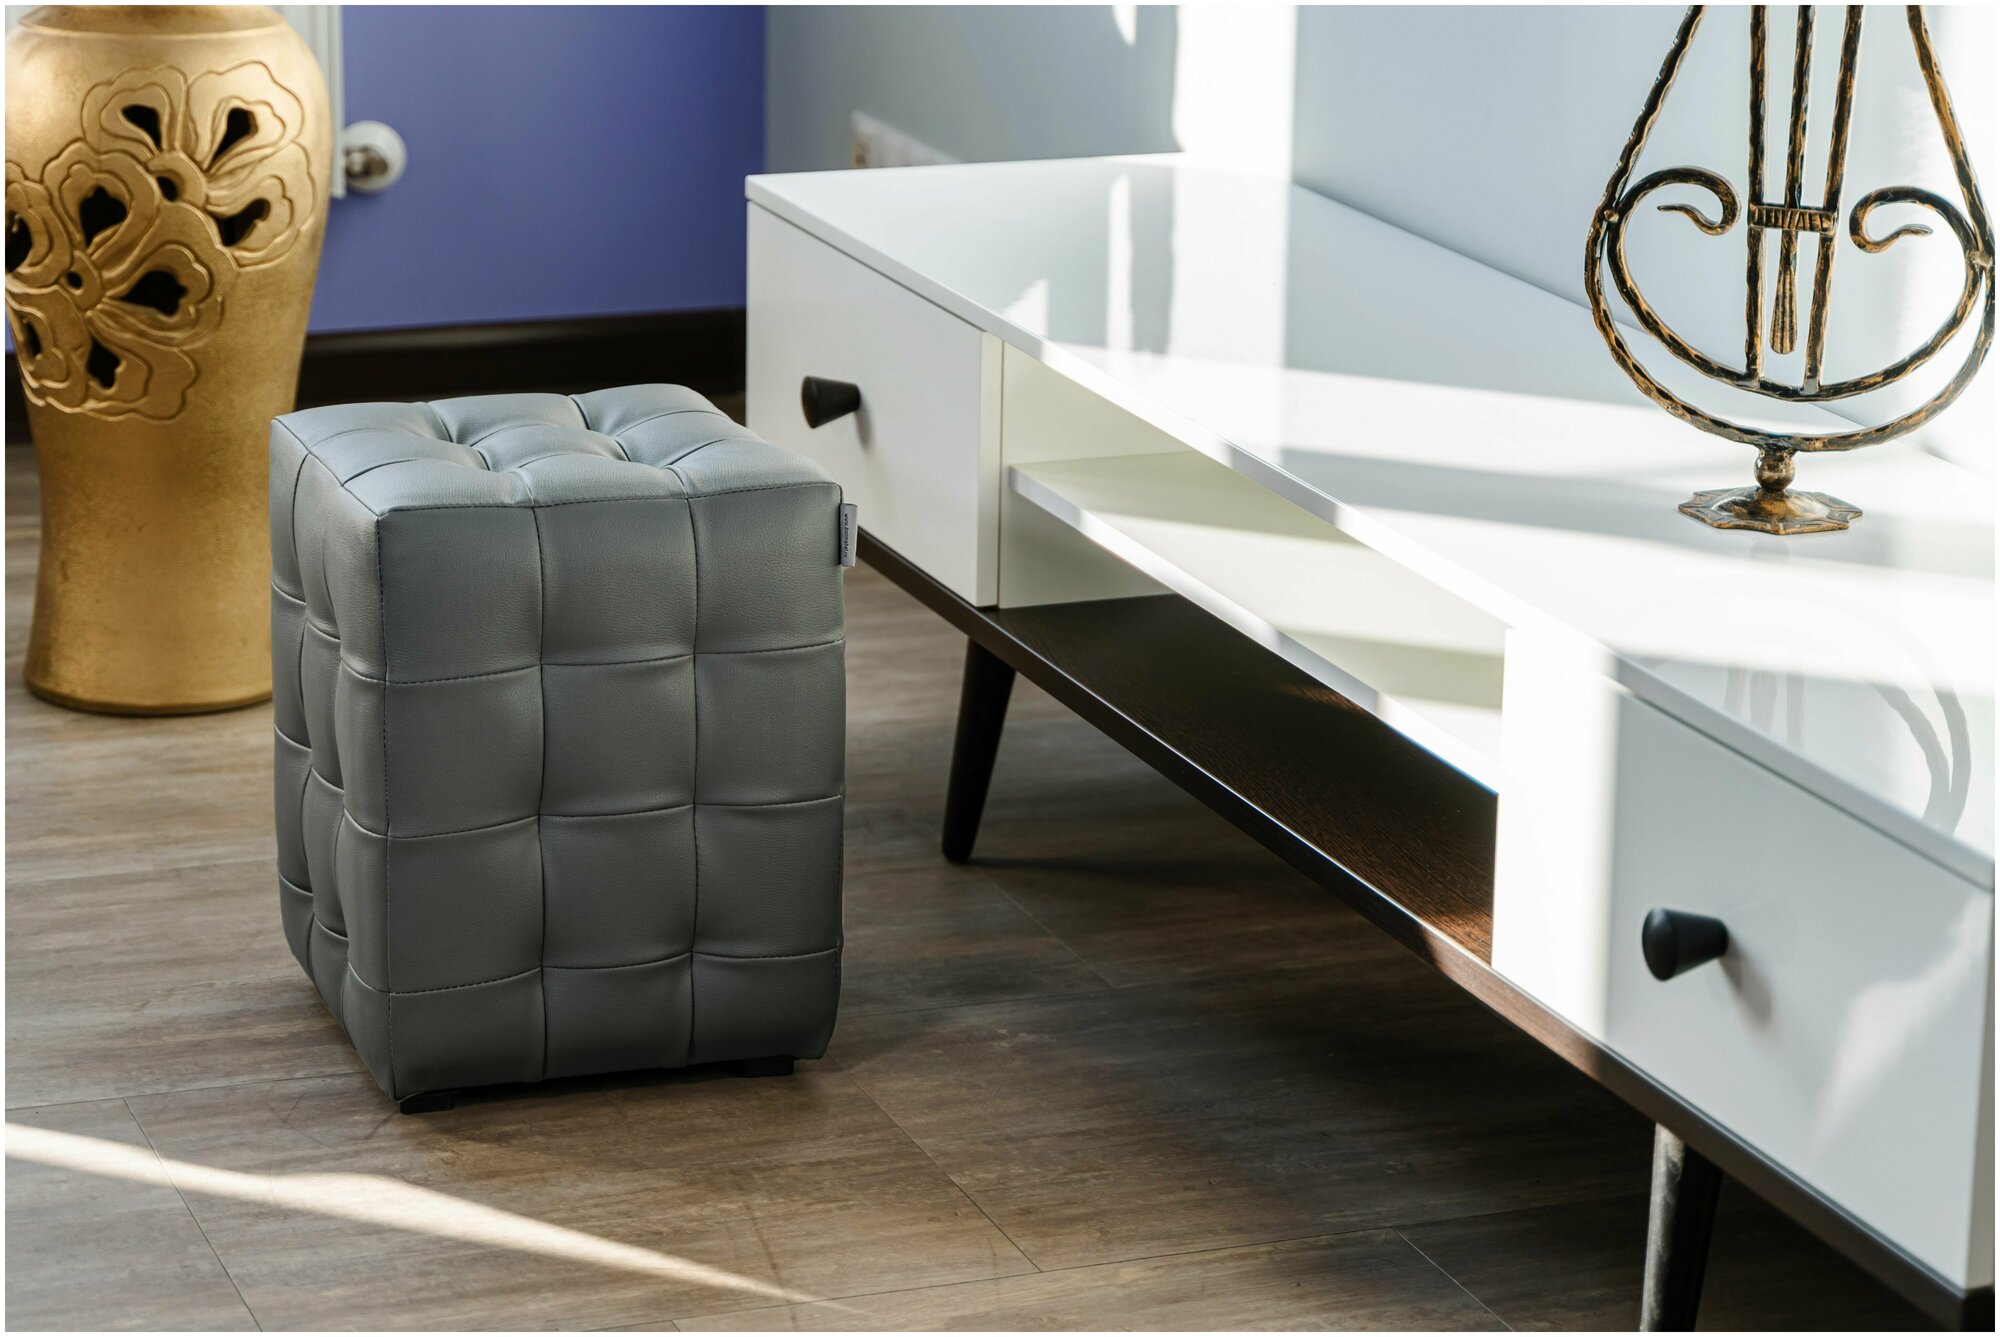 Пуфик БонМебель Модерн-2 мини, гольф серый, экокожа, 30х30х40 см, пуфик в прихожую, пуф, мебель, прихожая мебель